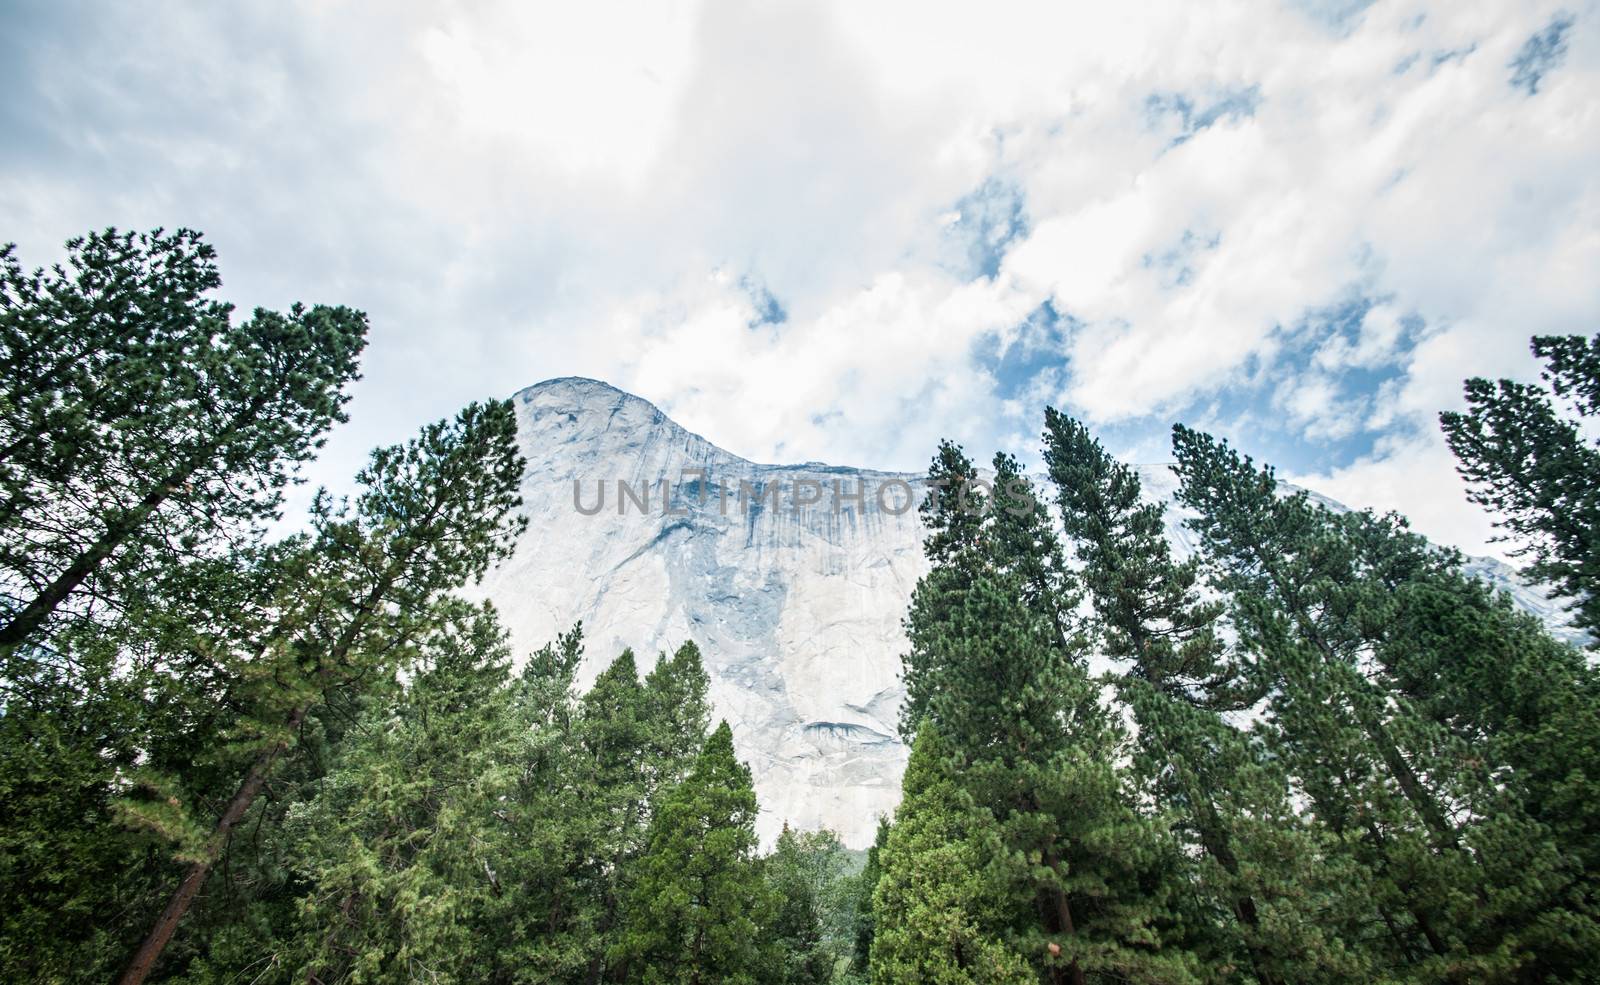 el capitan Yosemite by weltreisendertj